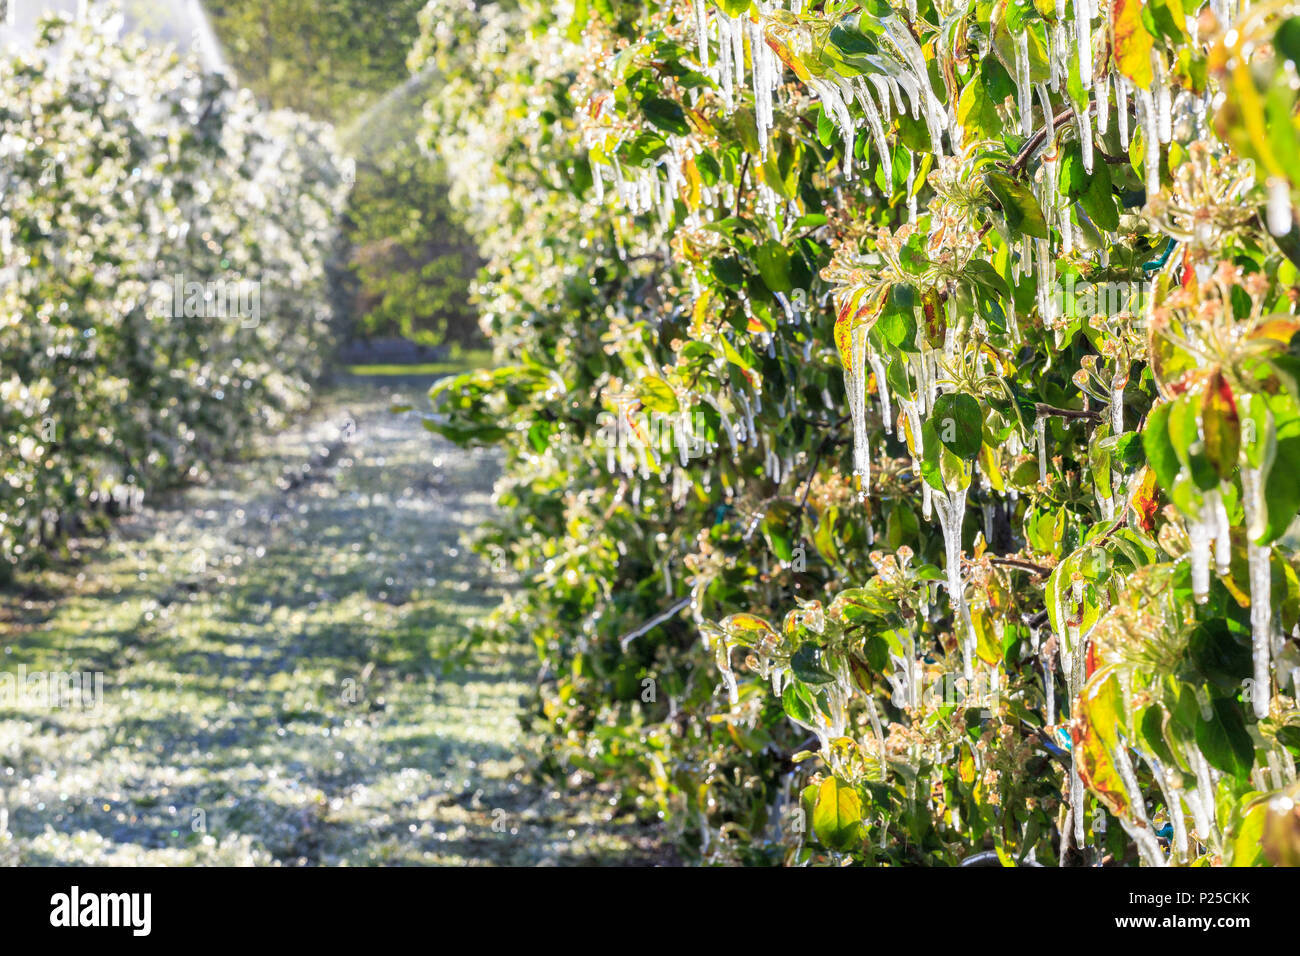 Stalattiti di ghiaccio sulle piante di Apple dopo l'innaffiamento che impedisce il congelamento dei fiori. Tirano, Valtellina, Lombardia, Italia. Foto Stock